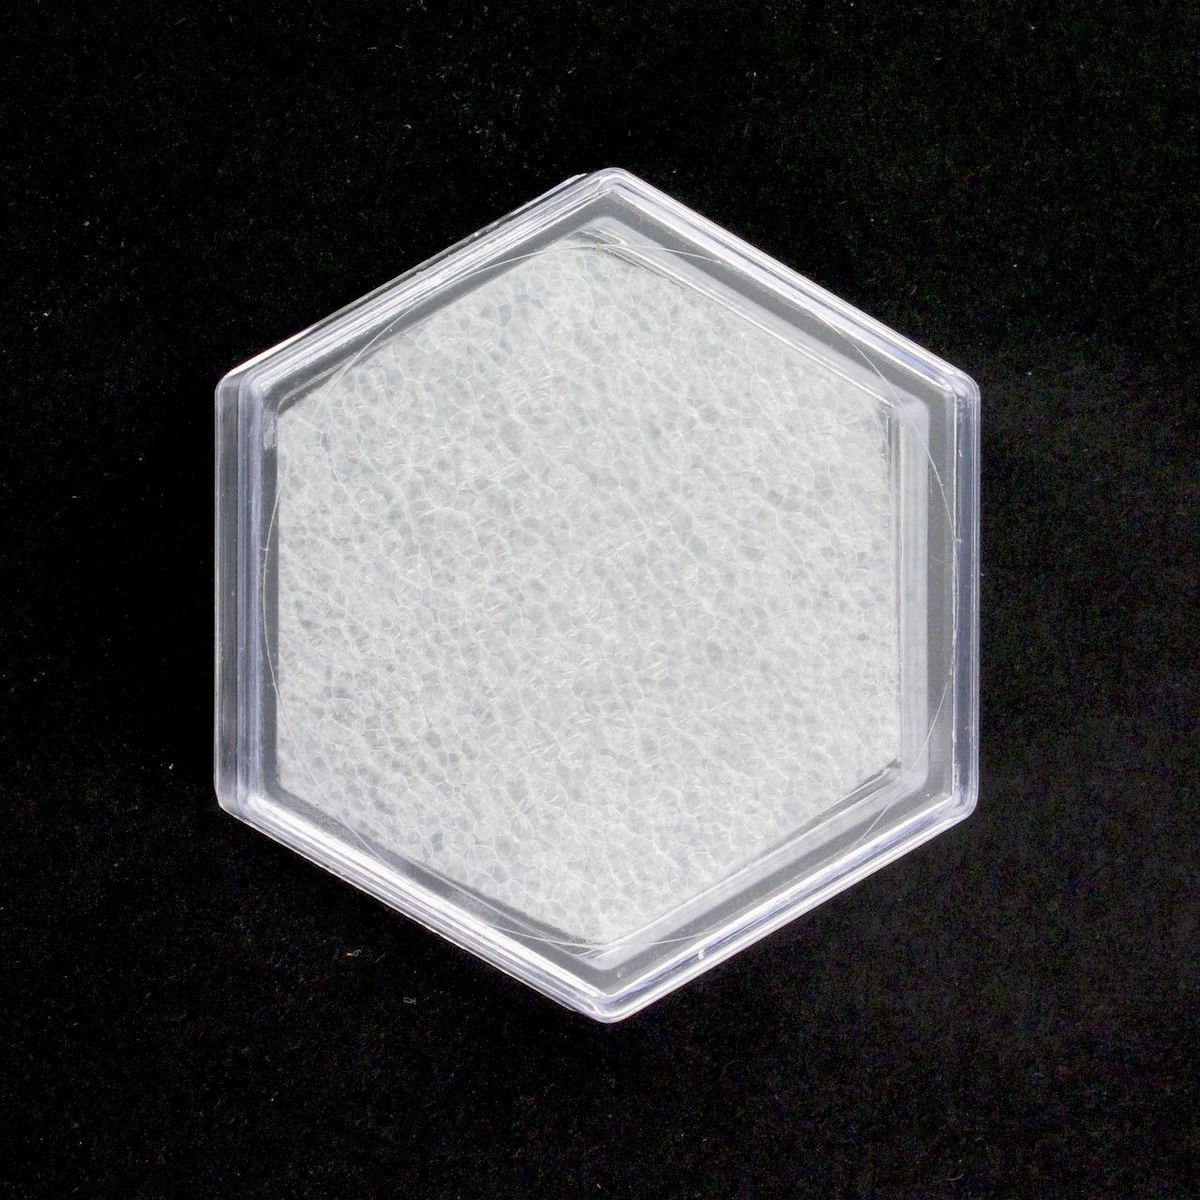 scatolina portarosario in plastica rigida esagonale - 4 x 5 cm